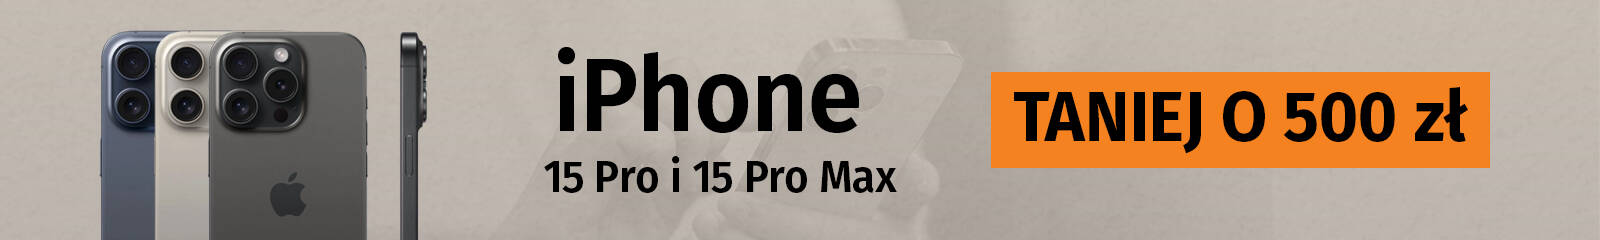 iPhone 15 Pro / Pro Max 500 zł taniej!